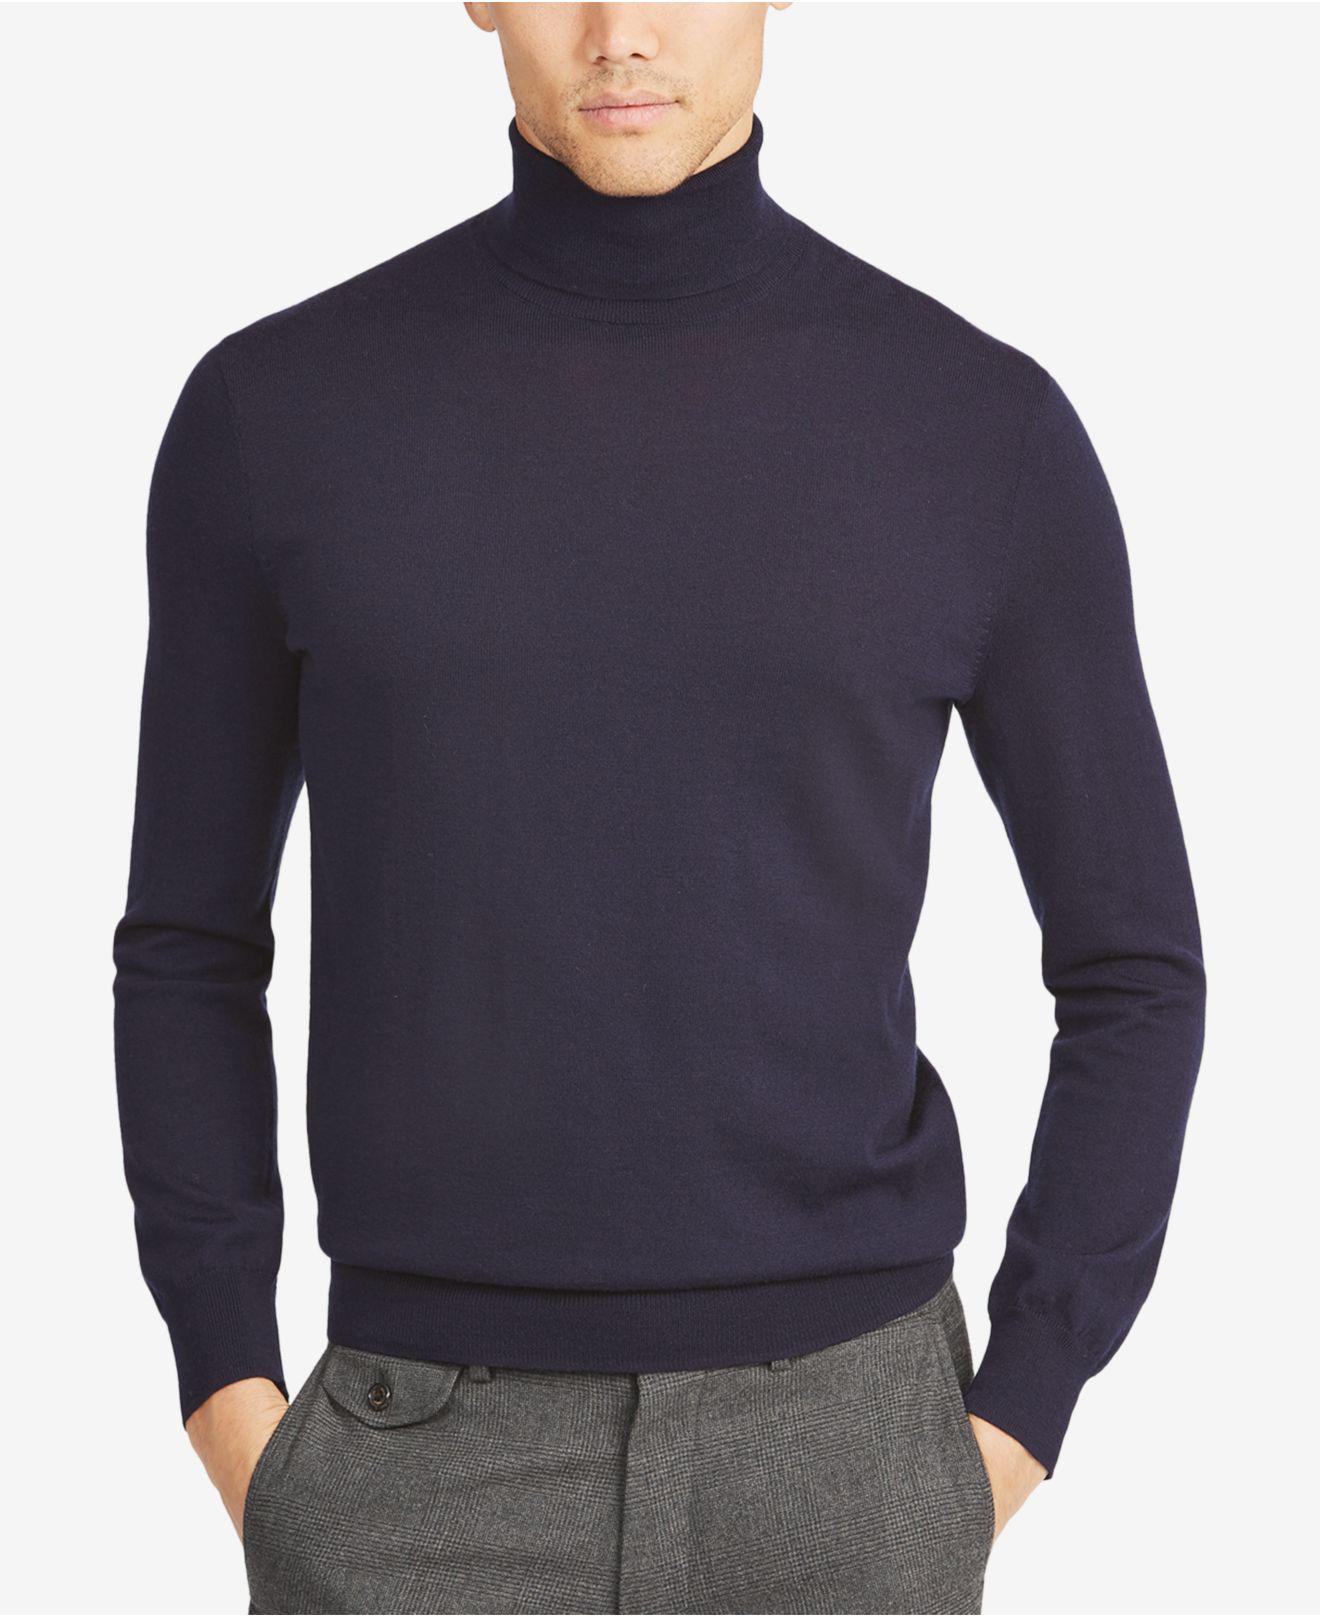 Polo Ralph Lauren Wool Turtleneck Sweater in Blue for Men - Lyst